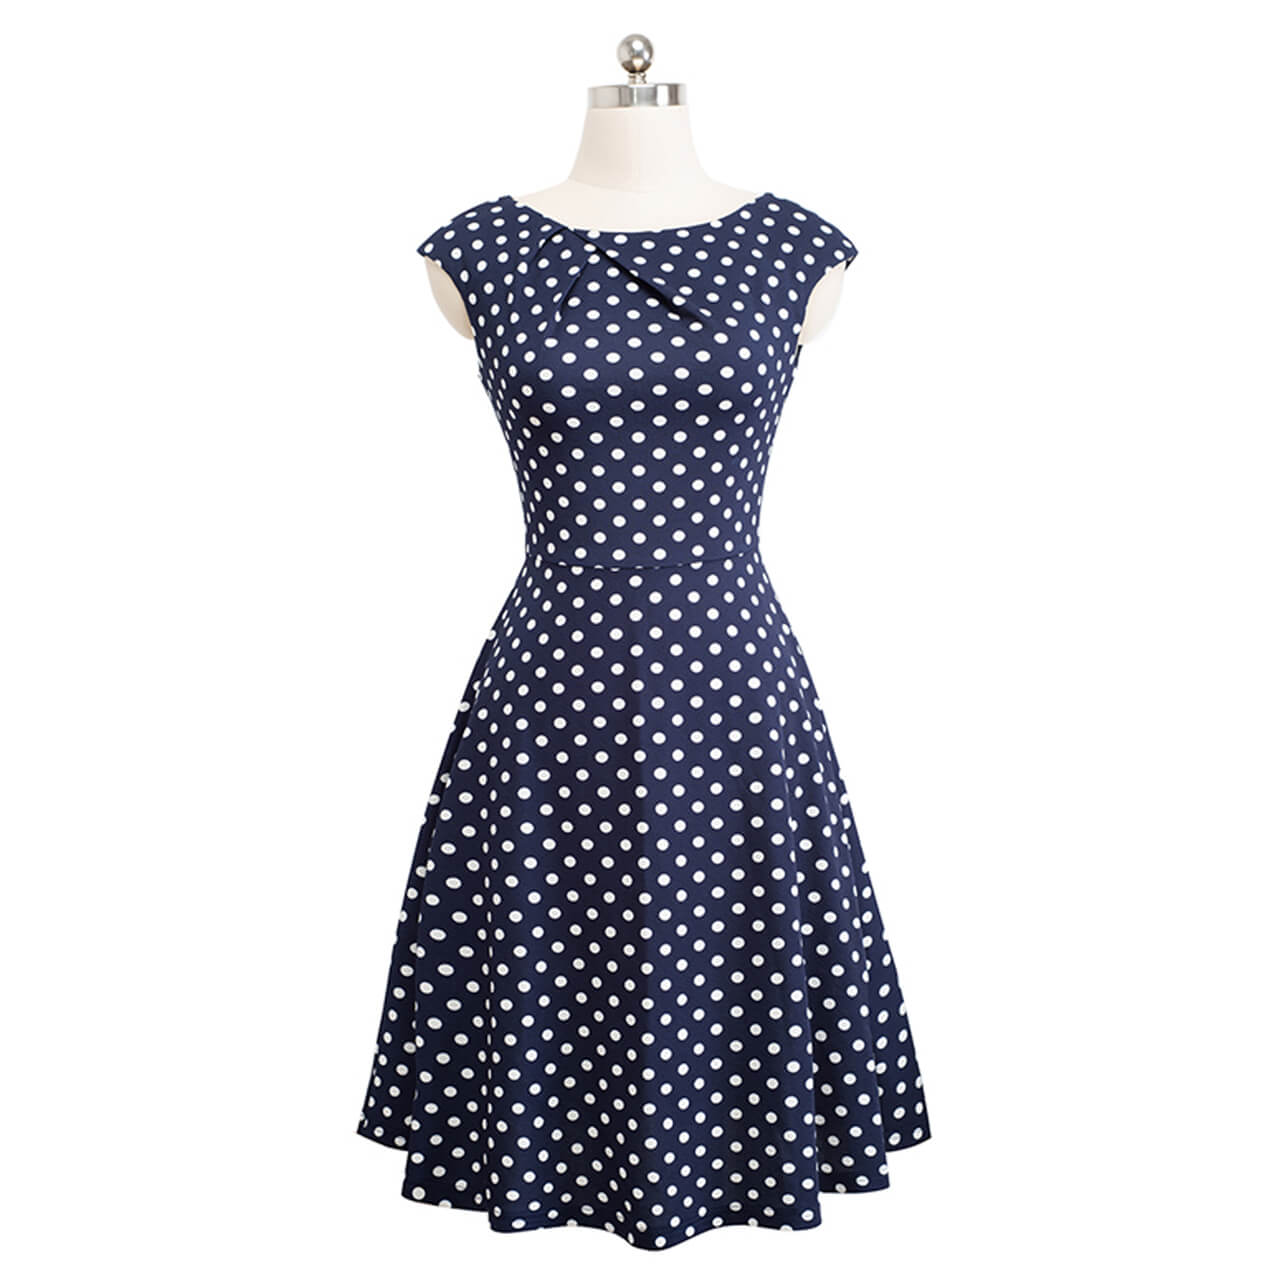 cute polka dot dress